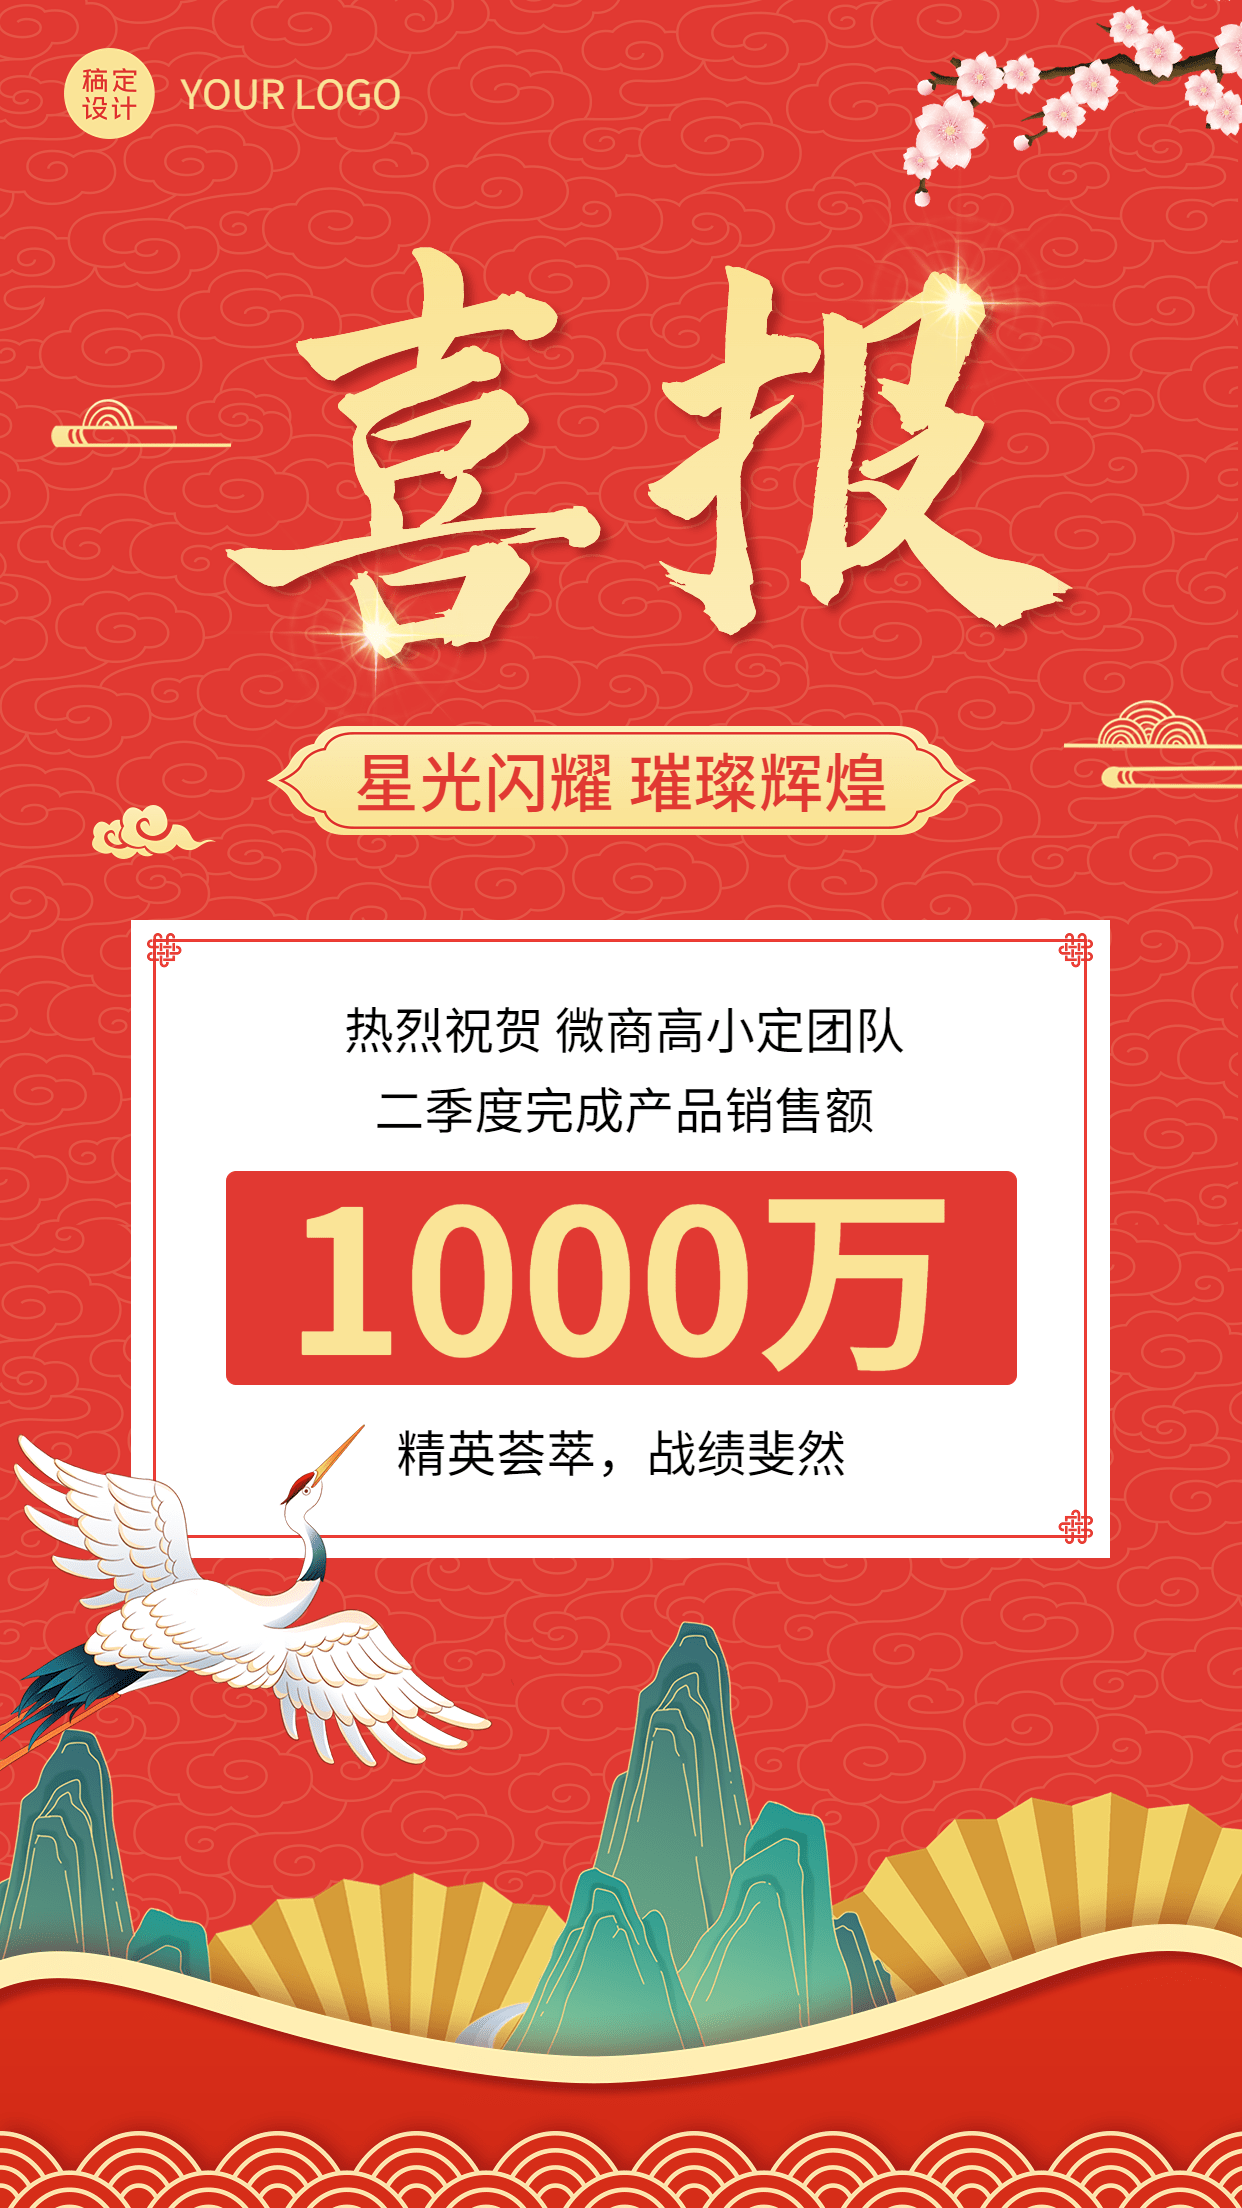 微商销售业绩表彰喜报贺报中国风插画手机海报预览效果